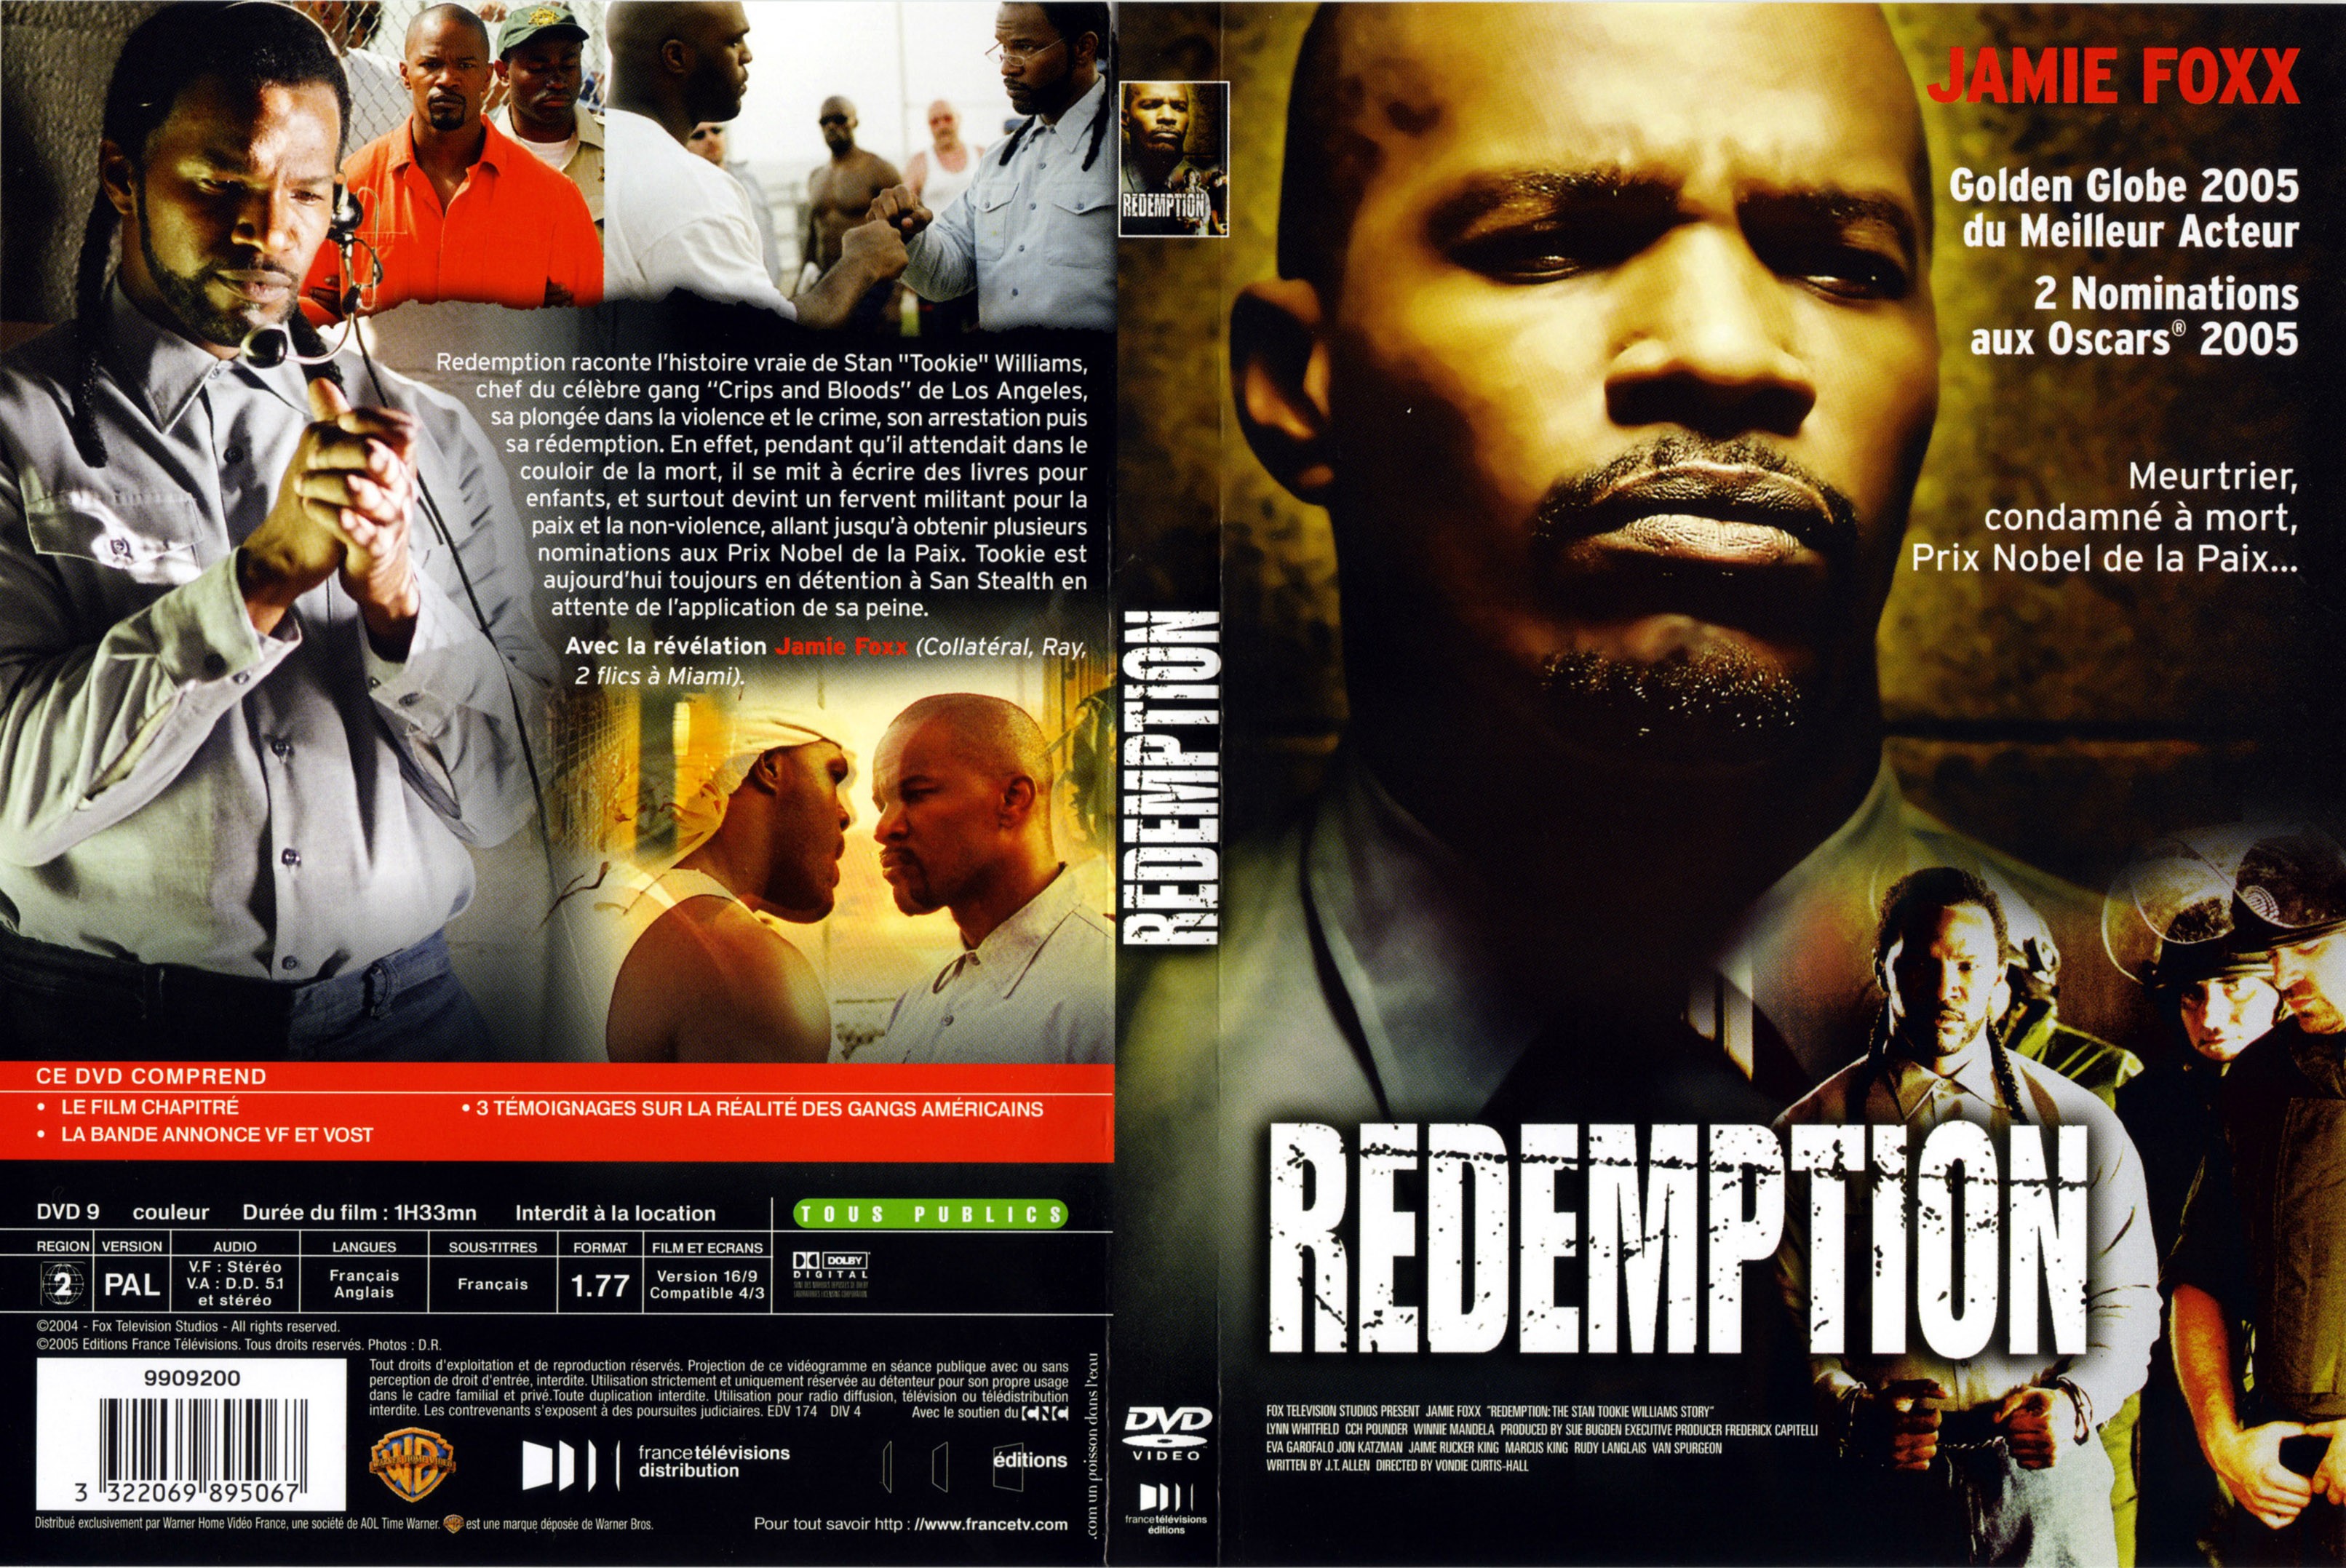 Jaquette DVD Redemption